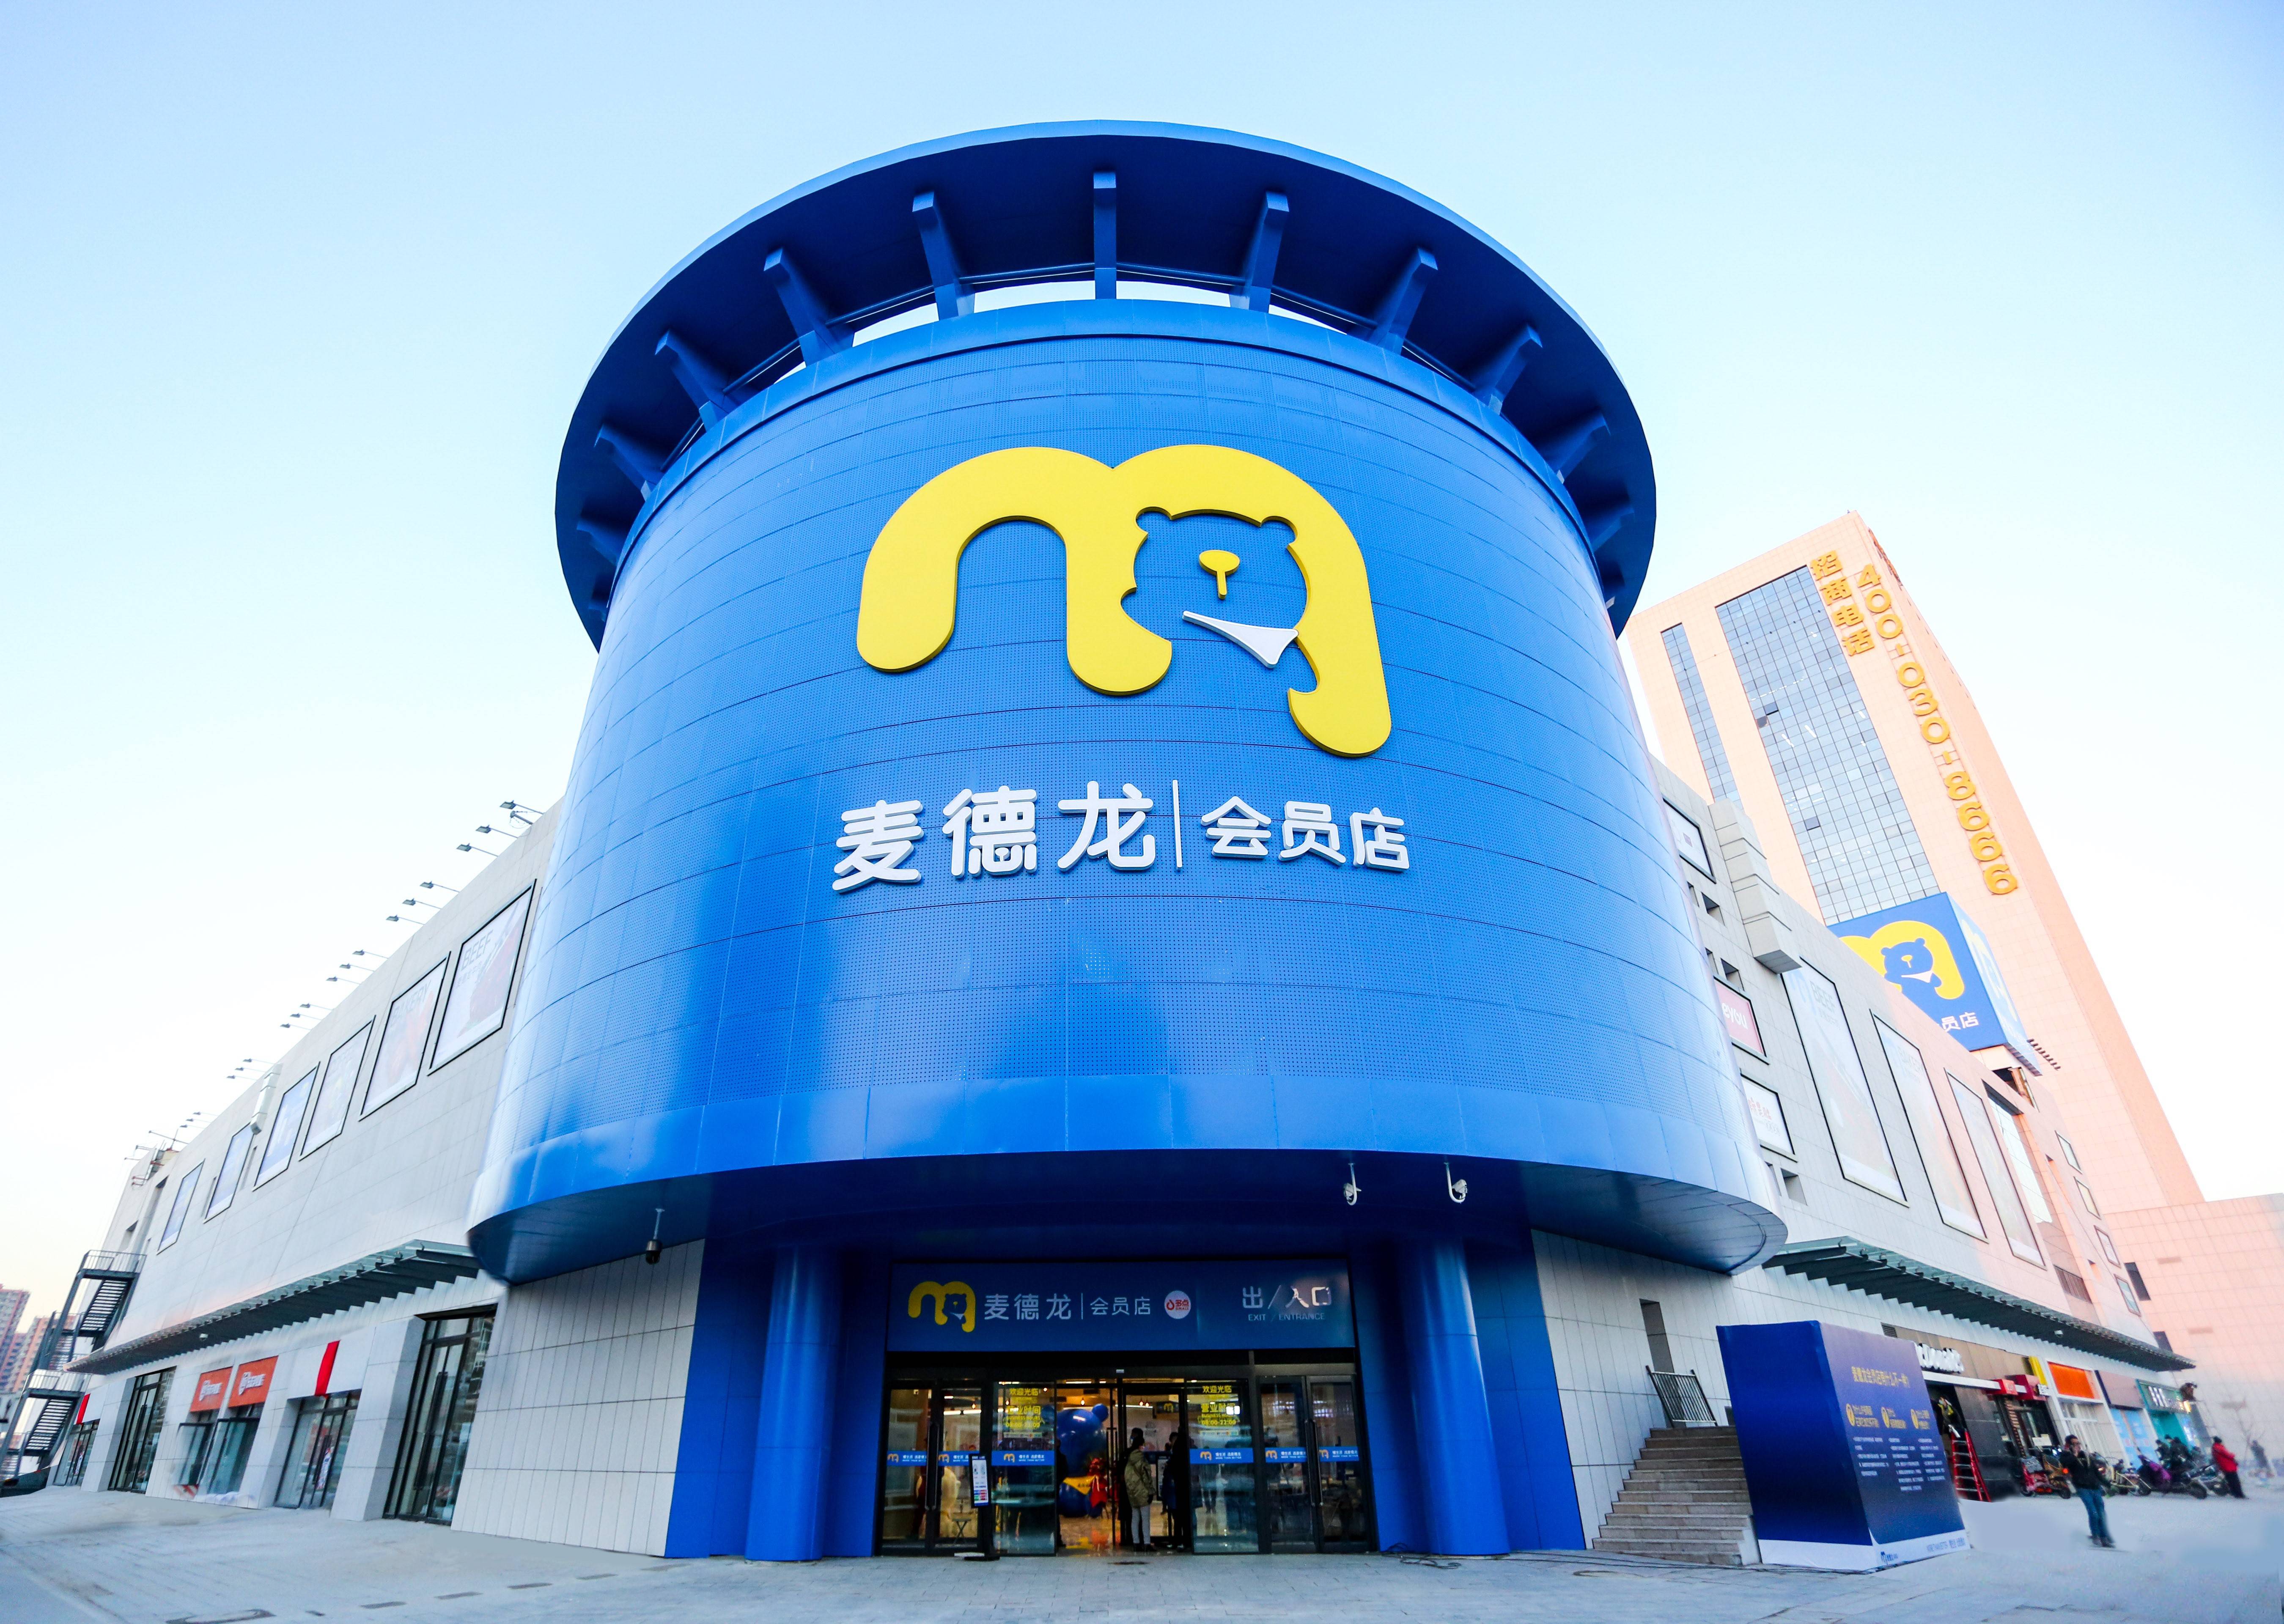 国际知名零售巨头麦德龙店入驻燕郊 市民畅享一站式购物